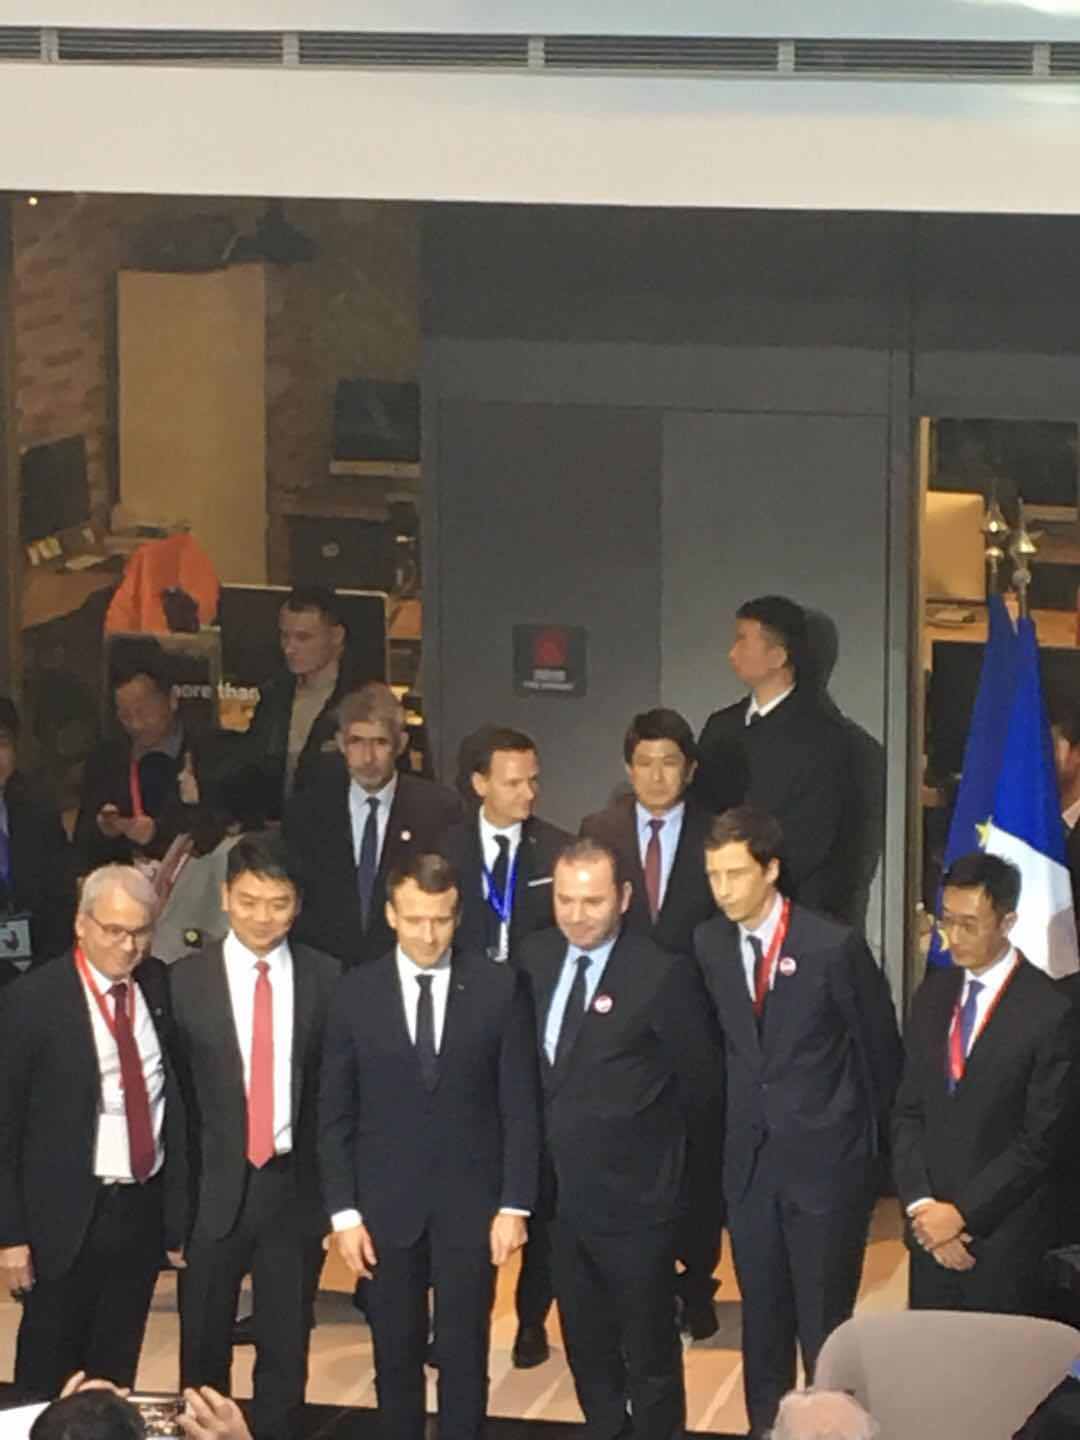 法国总统马克龙会见刘强东 京东未来两年销售20亿欧元法国商品